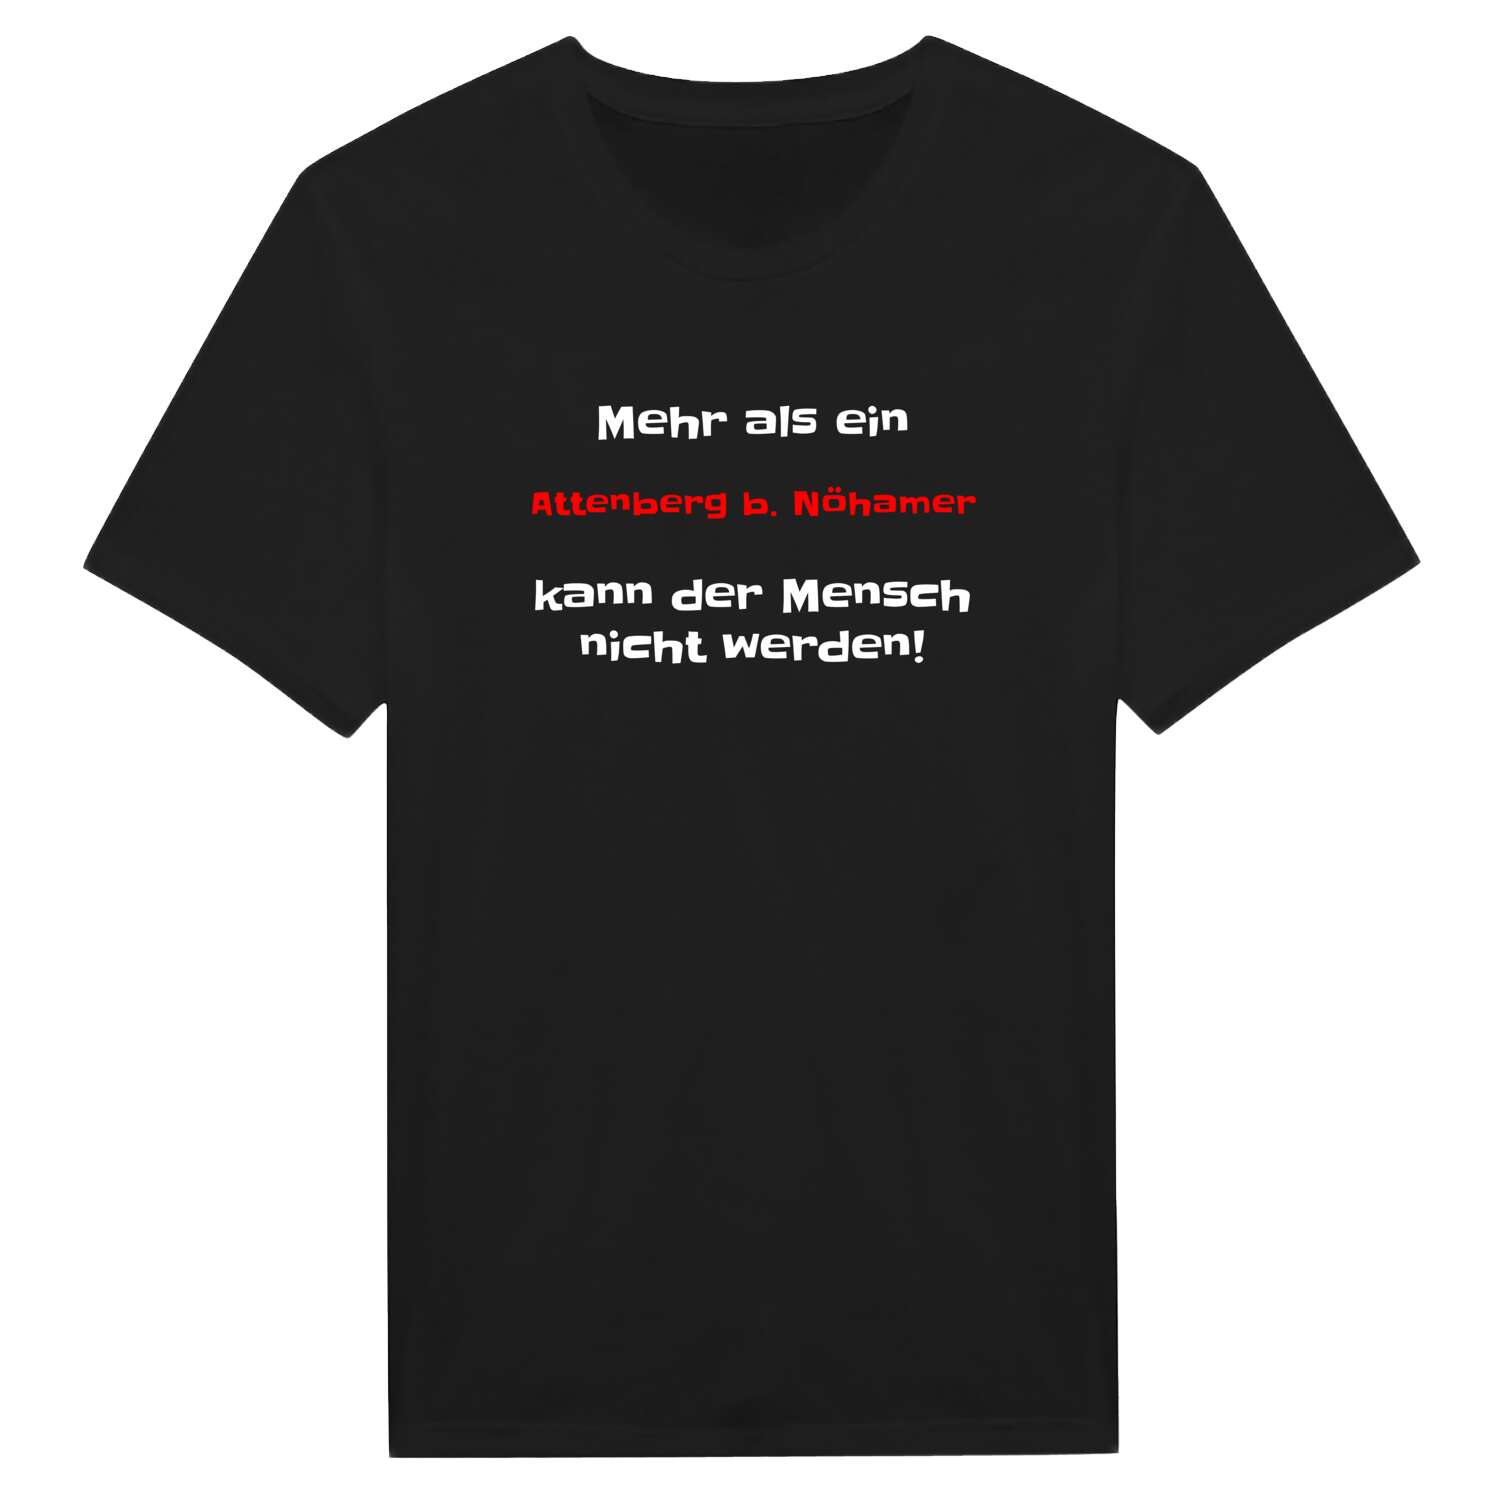 Attenberg b. Nöham T-Shirt »Mehr als ein«